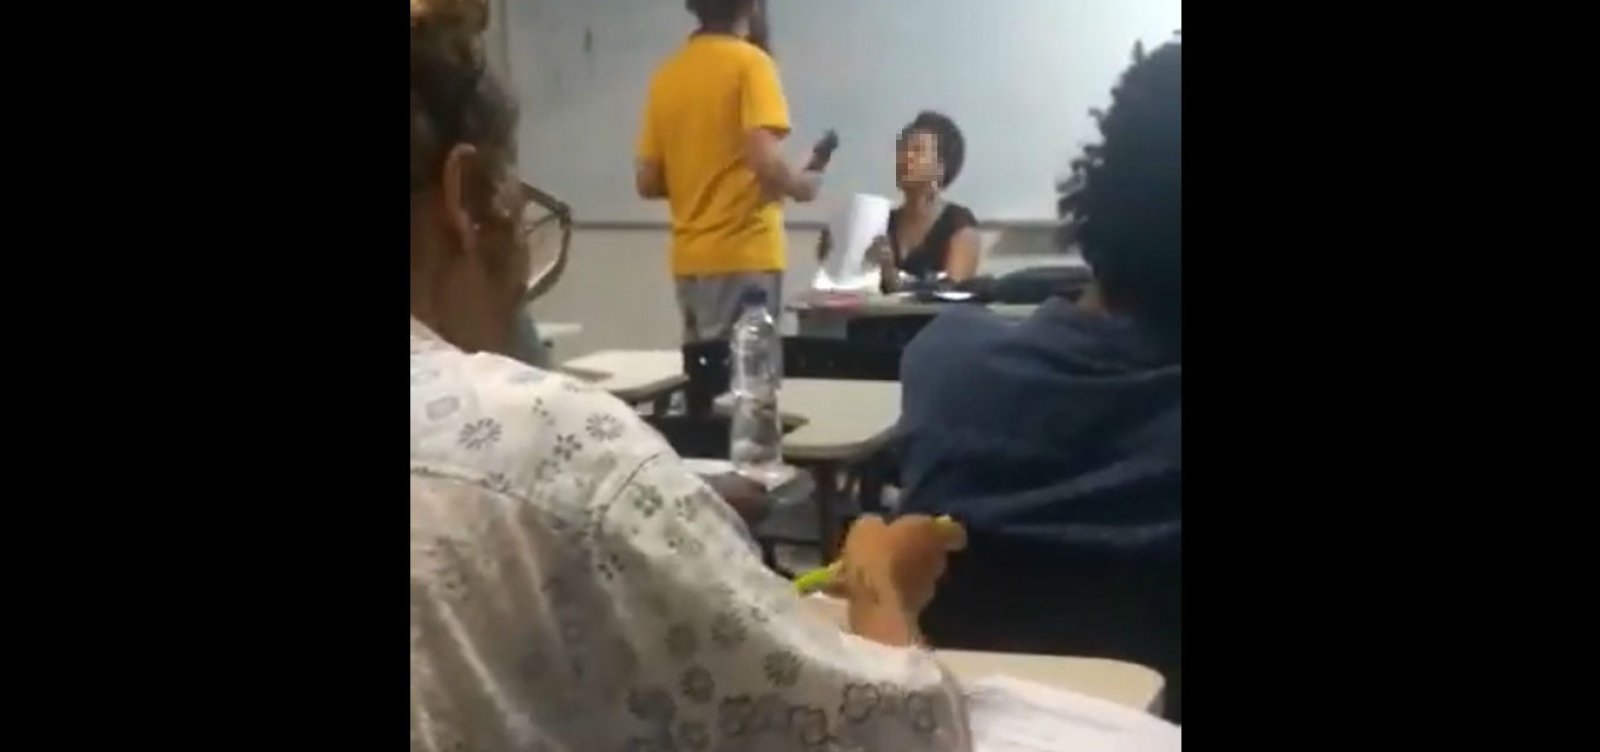 Aluno da UFRB diz que recusou prova de professora negra por ‘questão de energia’